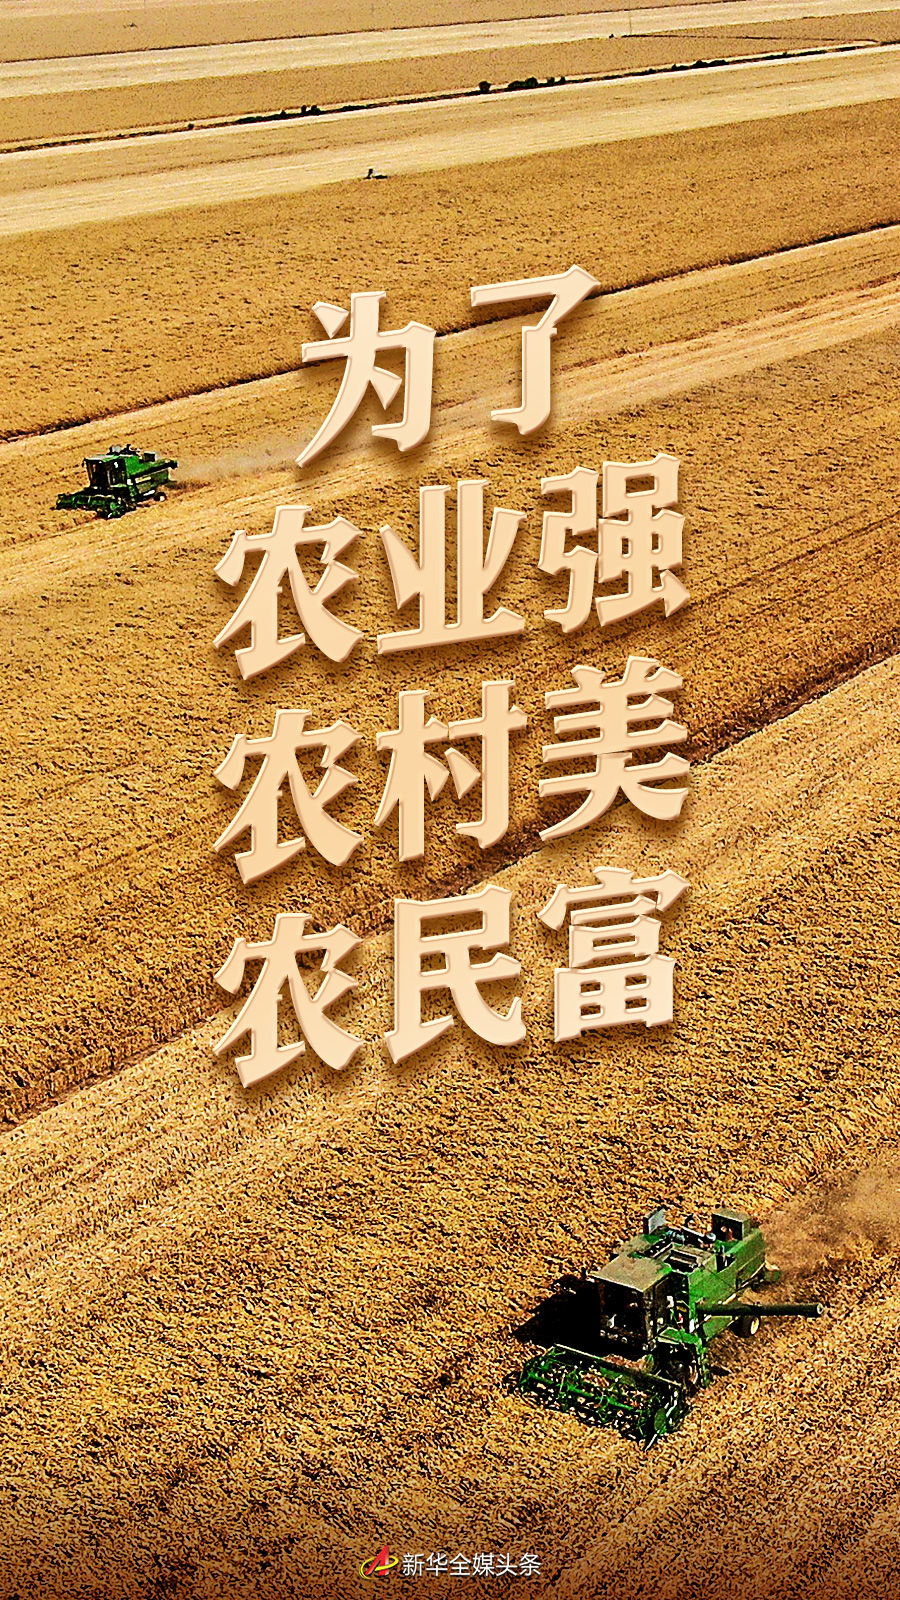 以习近平同志为核心的党中央引领推进新时代农业农村现代化事业述评